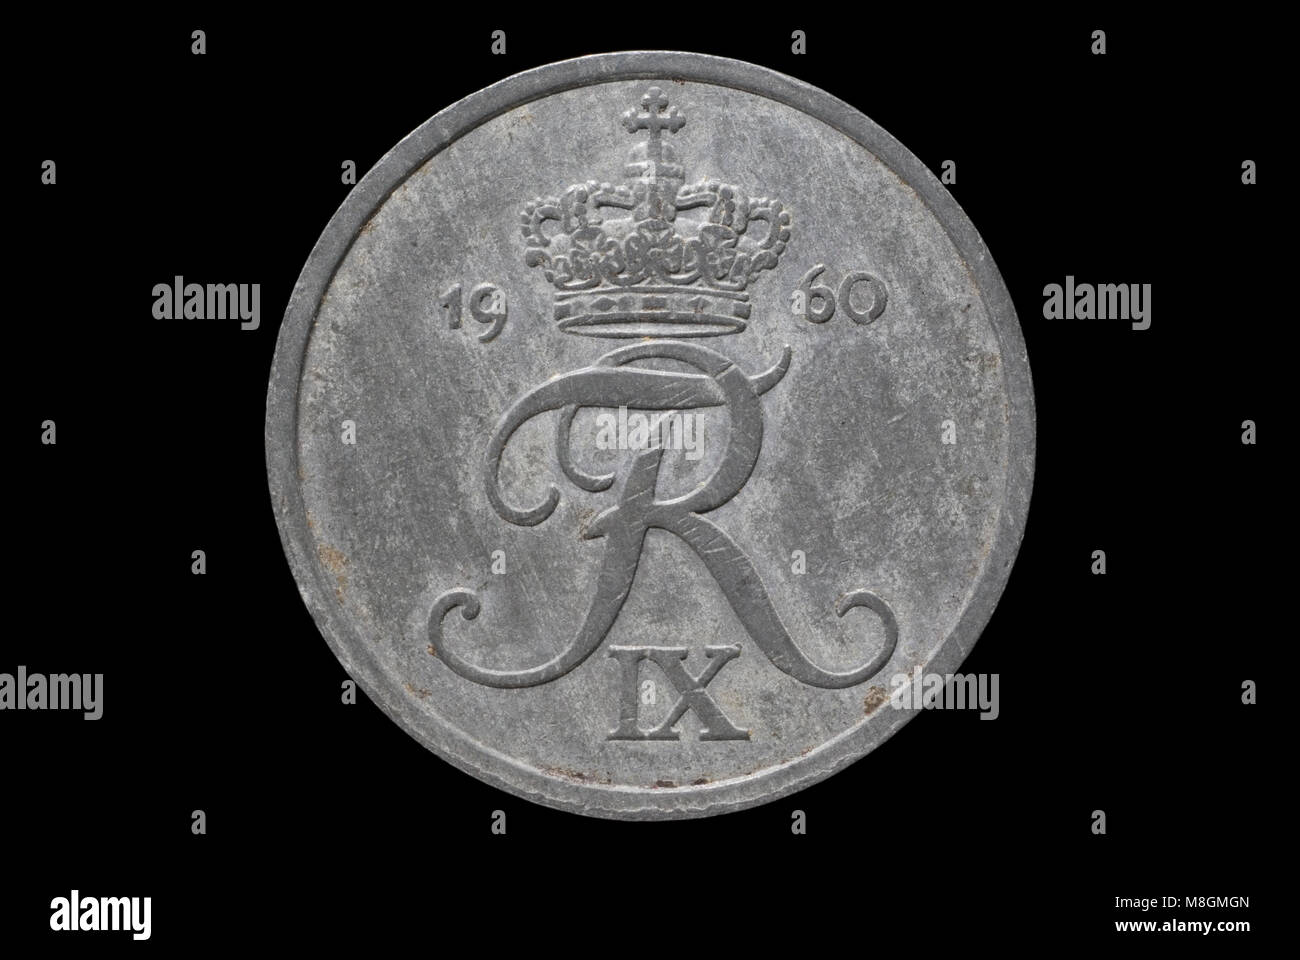 Zinc Coin of Denmark Stock Photo